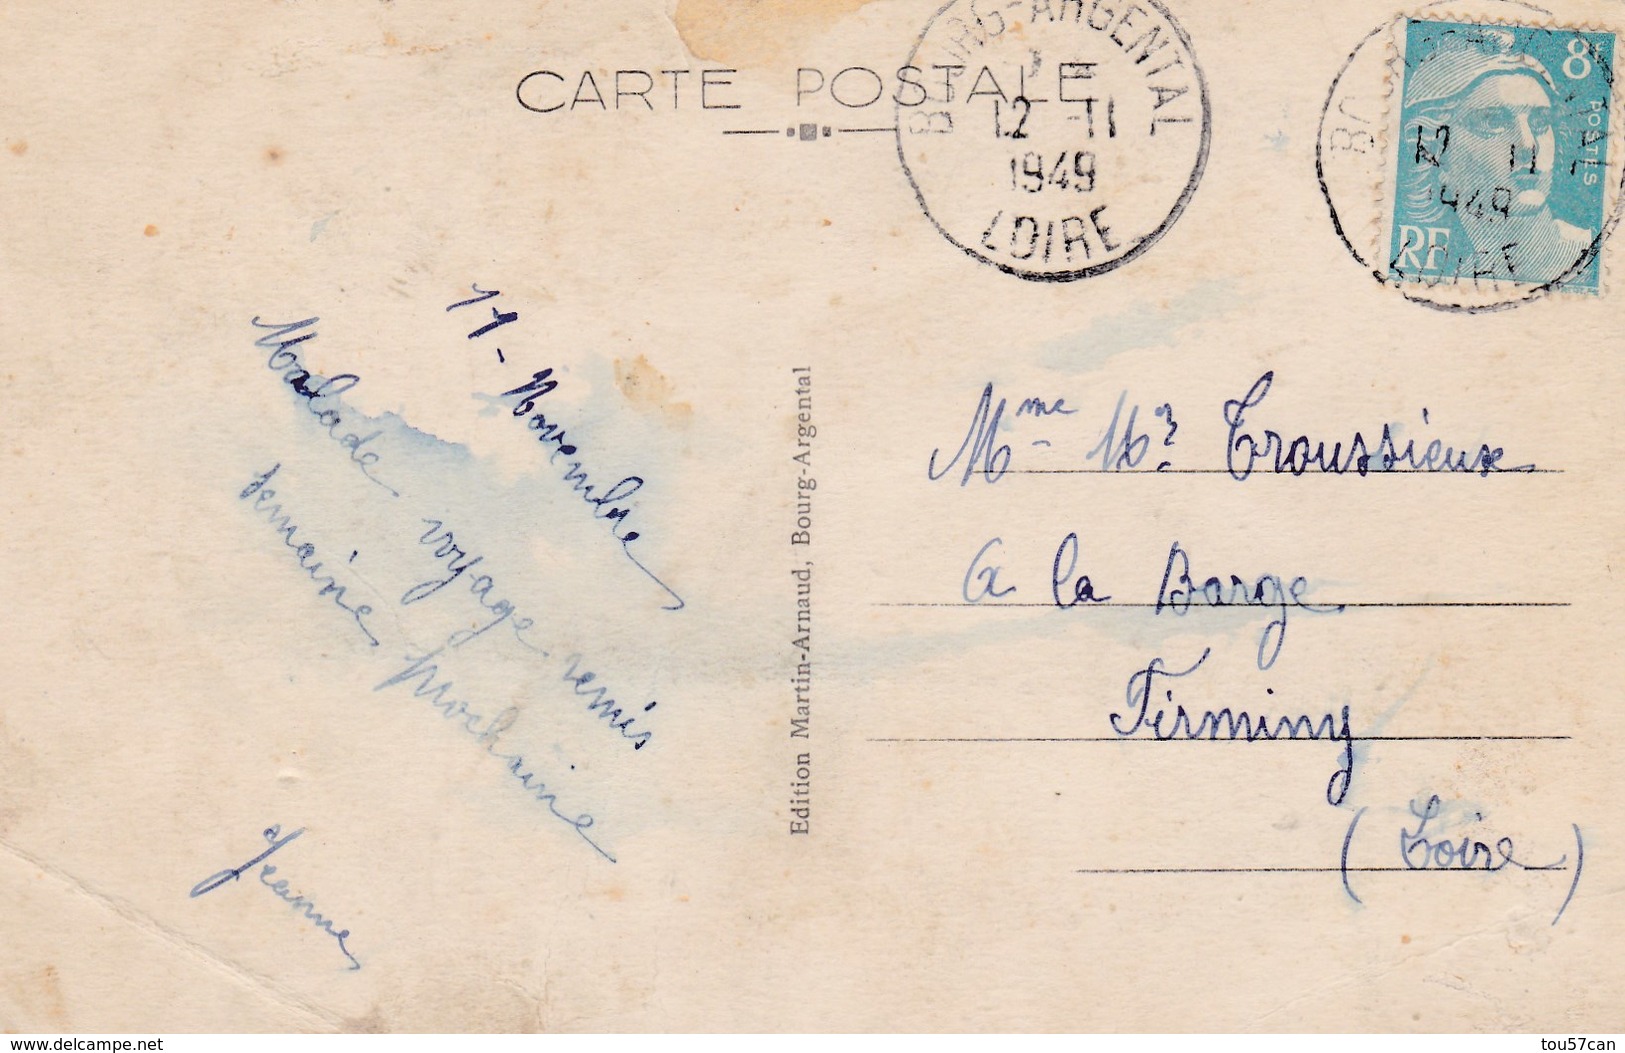 BOURG ARGENTAL - LOIRE -  (42) - CPA COULEUR DE 1949  - BEL AFFRANCHISSEMENT POSTAL. - Bourg Argental